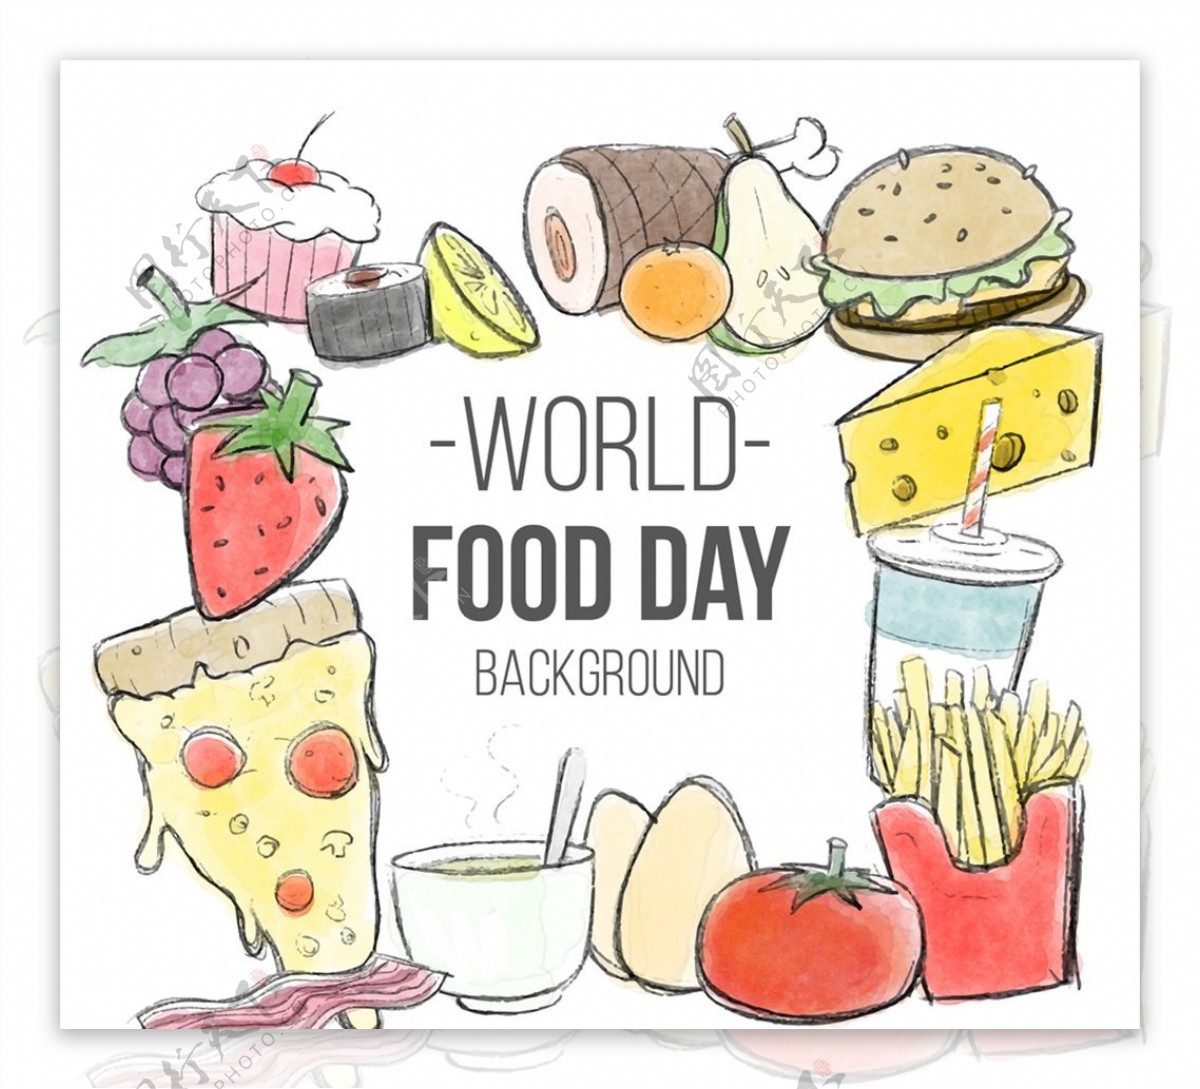 彩绘世界粮食日食物插画矢量素材